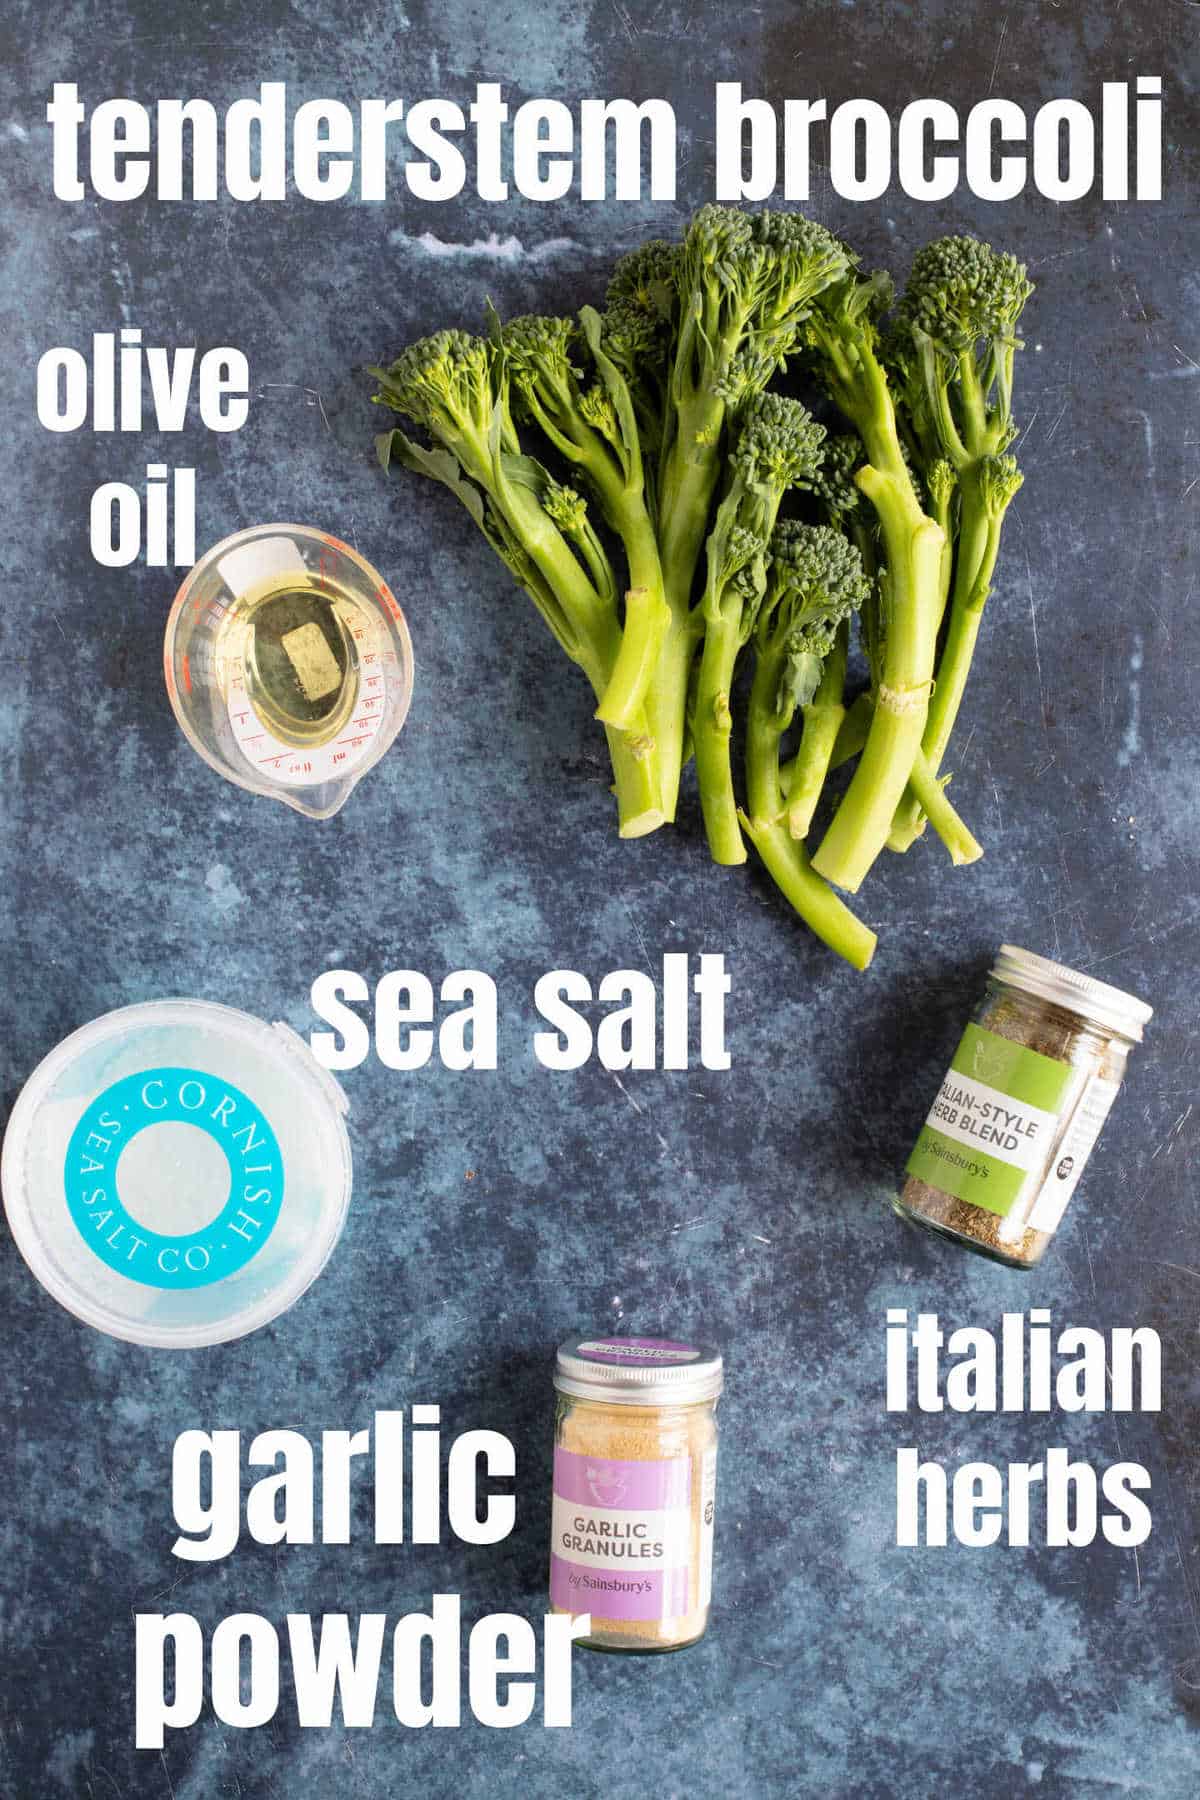 Ingredients needed for roasted tenderstem broccoli.